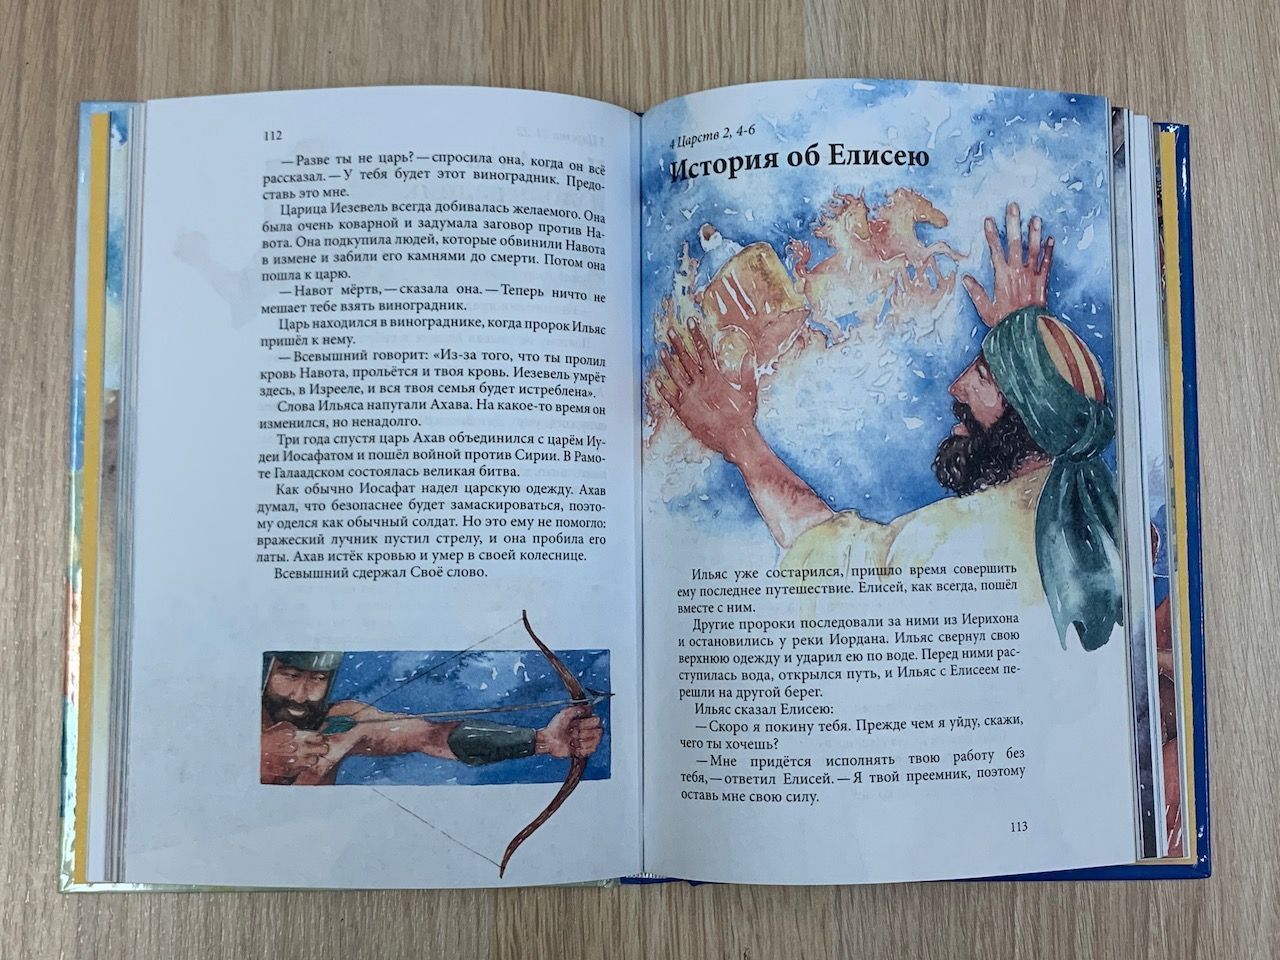 Истории из Священного Писания для всей семьи, цветные иллюстрации, большой формат. Отрывки из Таурата, Книги Пророков и Инджила. Восточный перевод